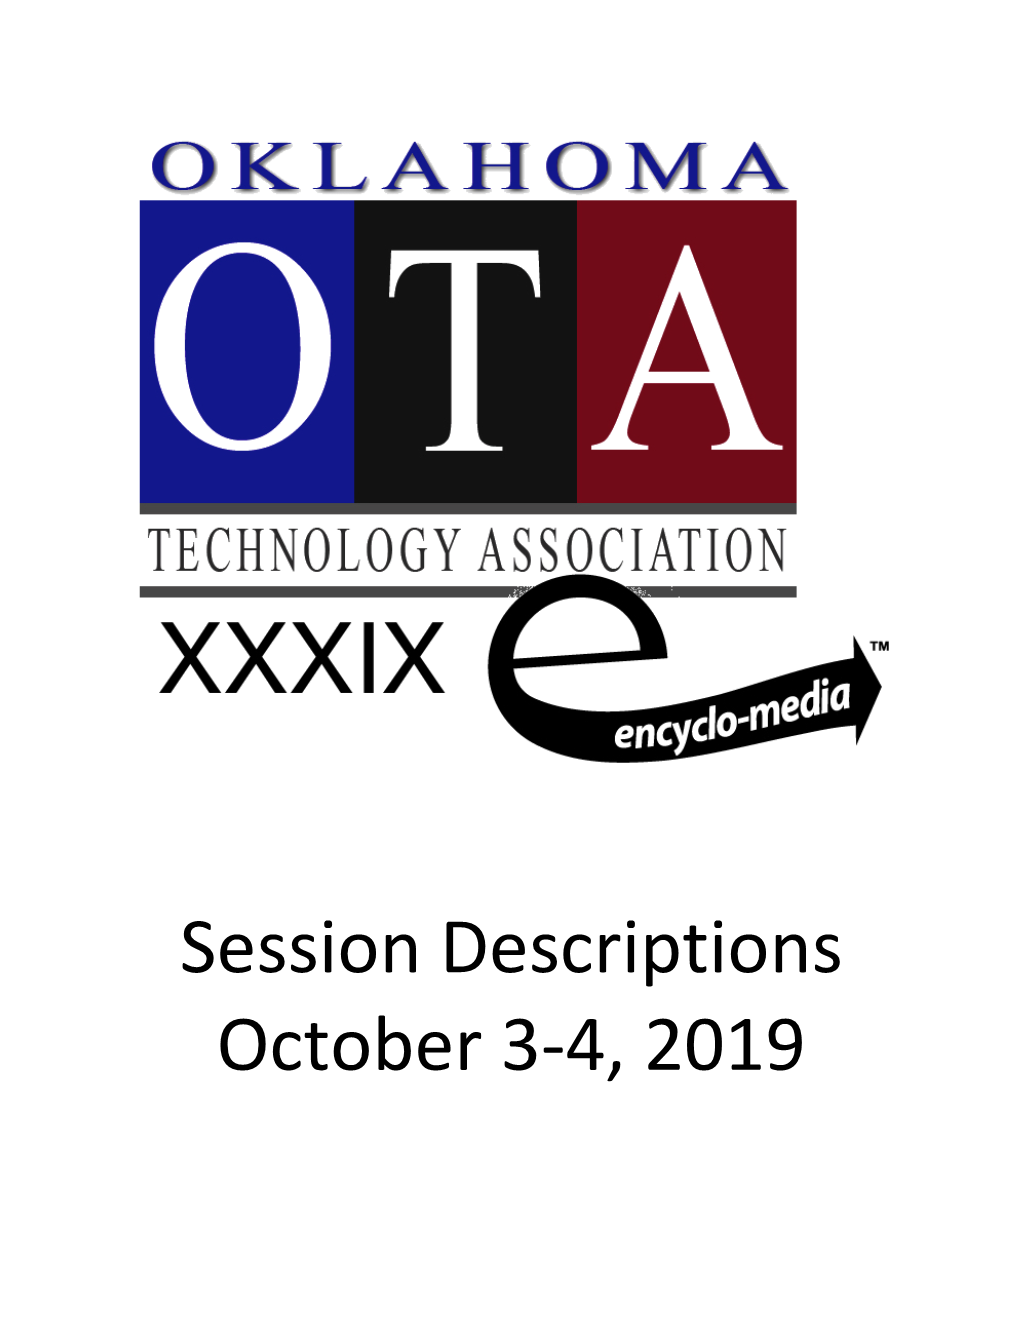 Session Descriptions October 3-4, 2019